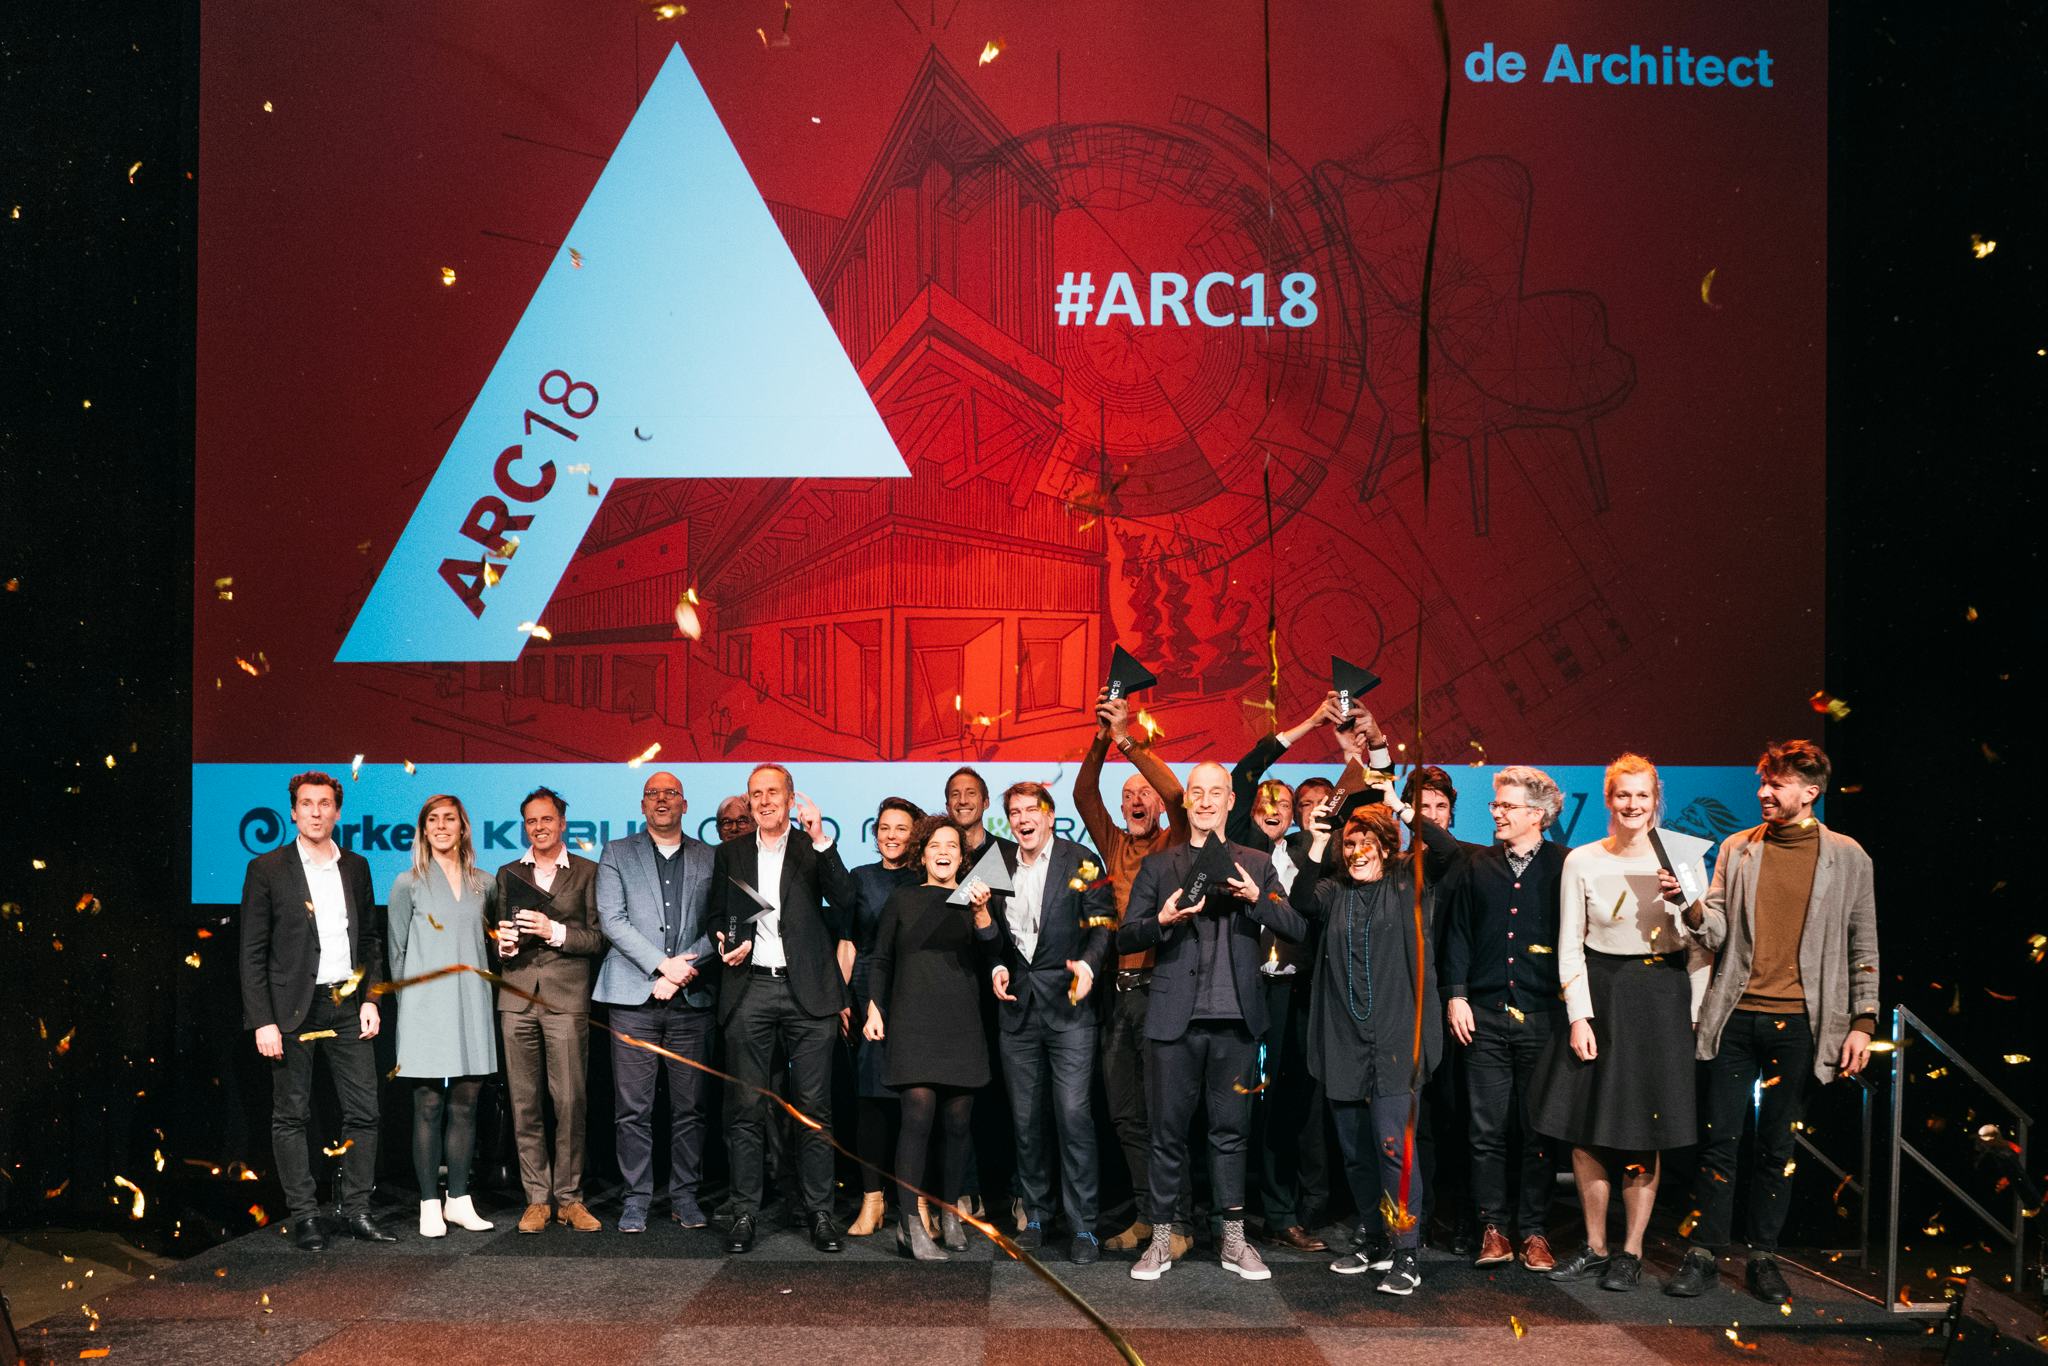 En de winnaars van ARC18 Awards zijn…